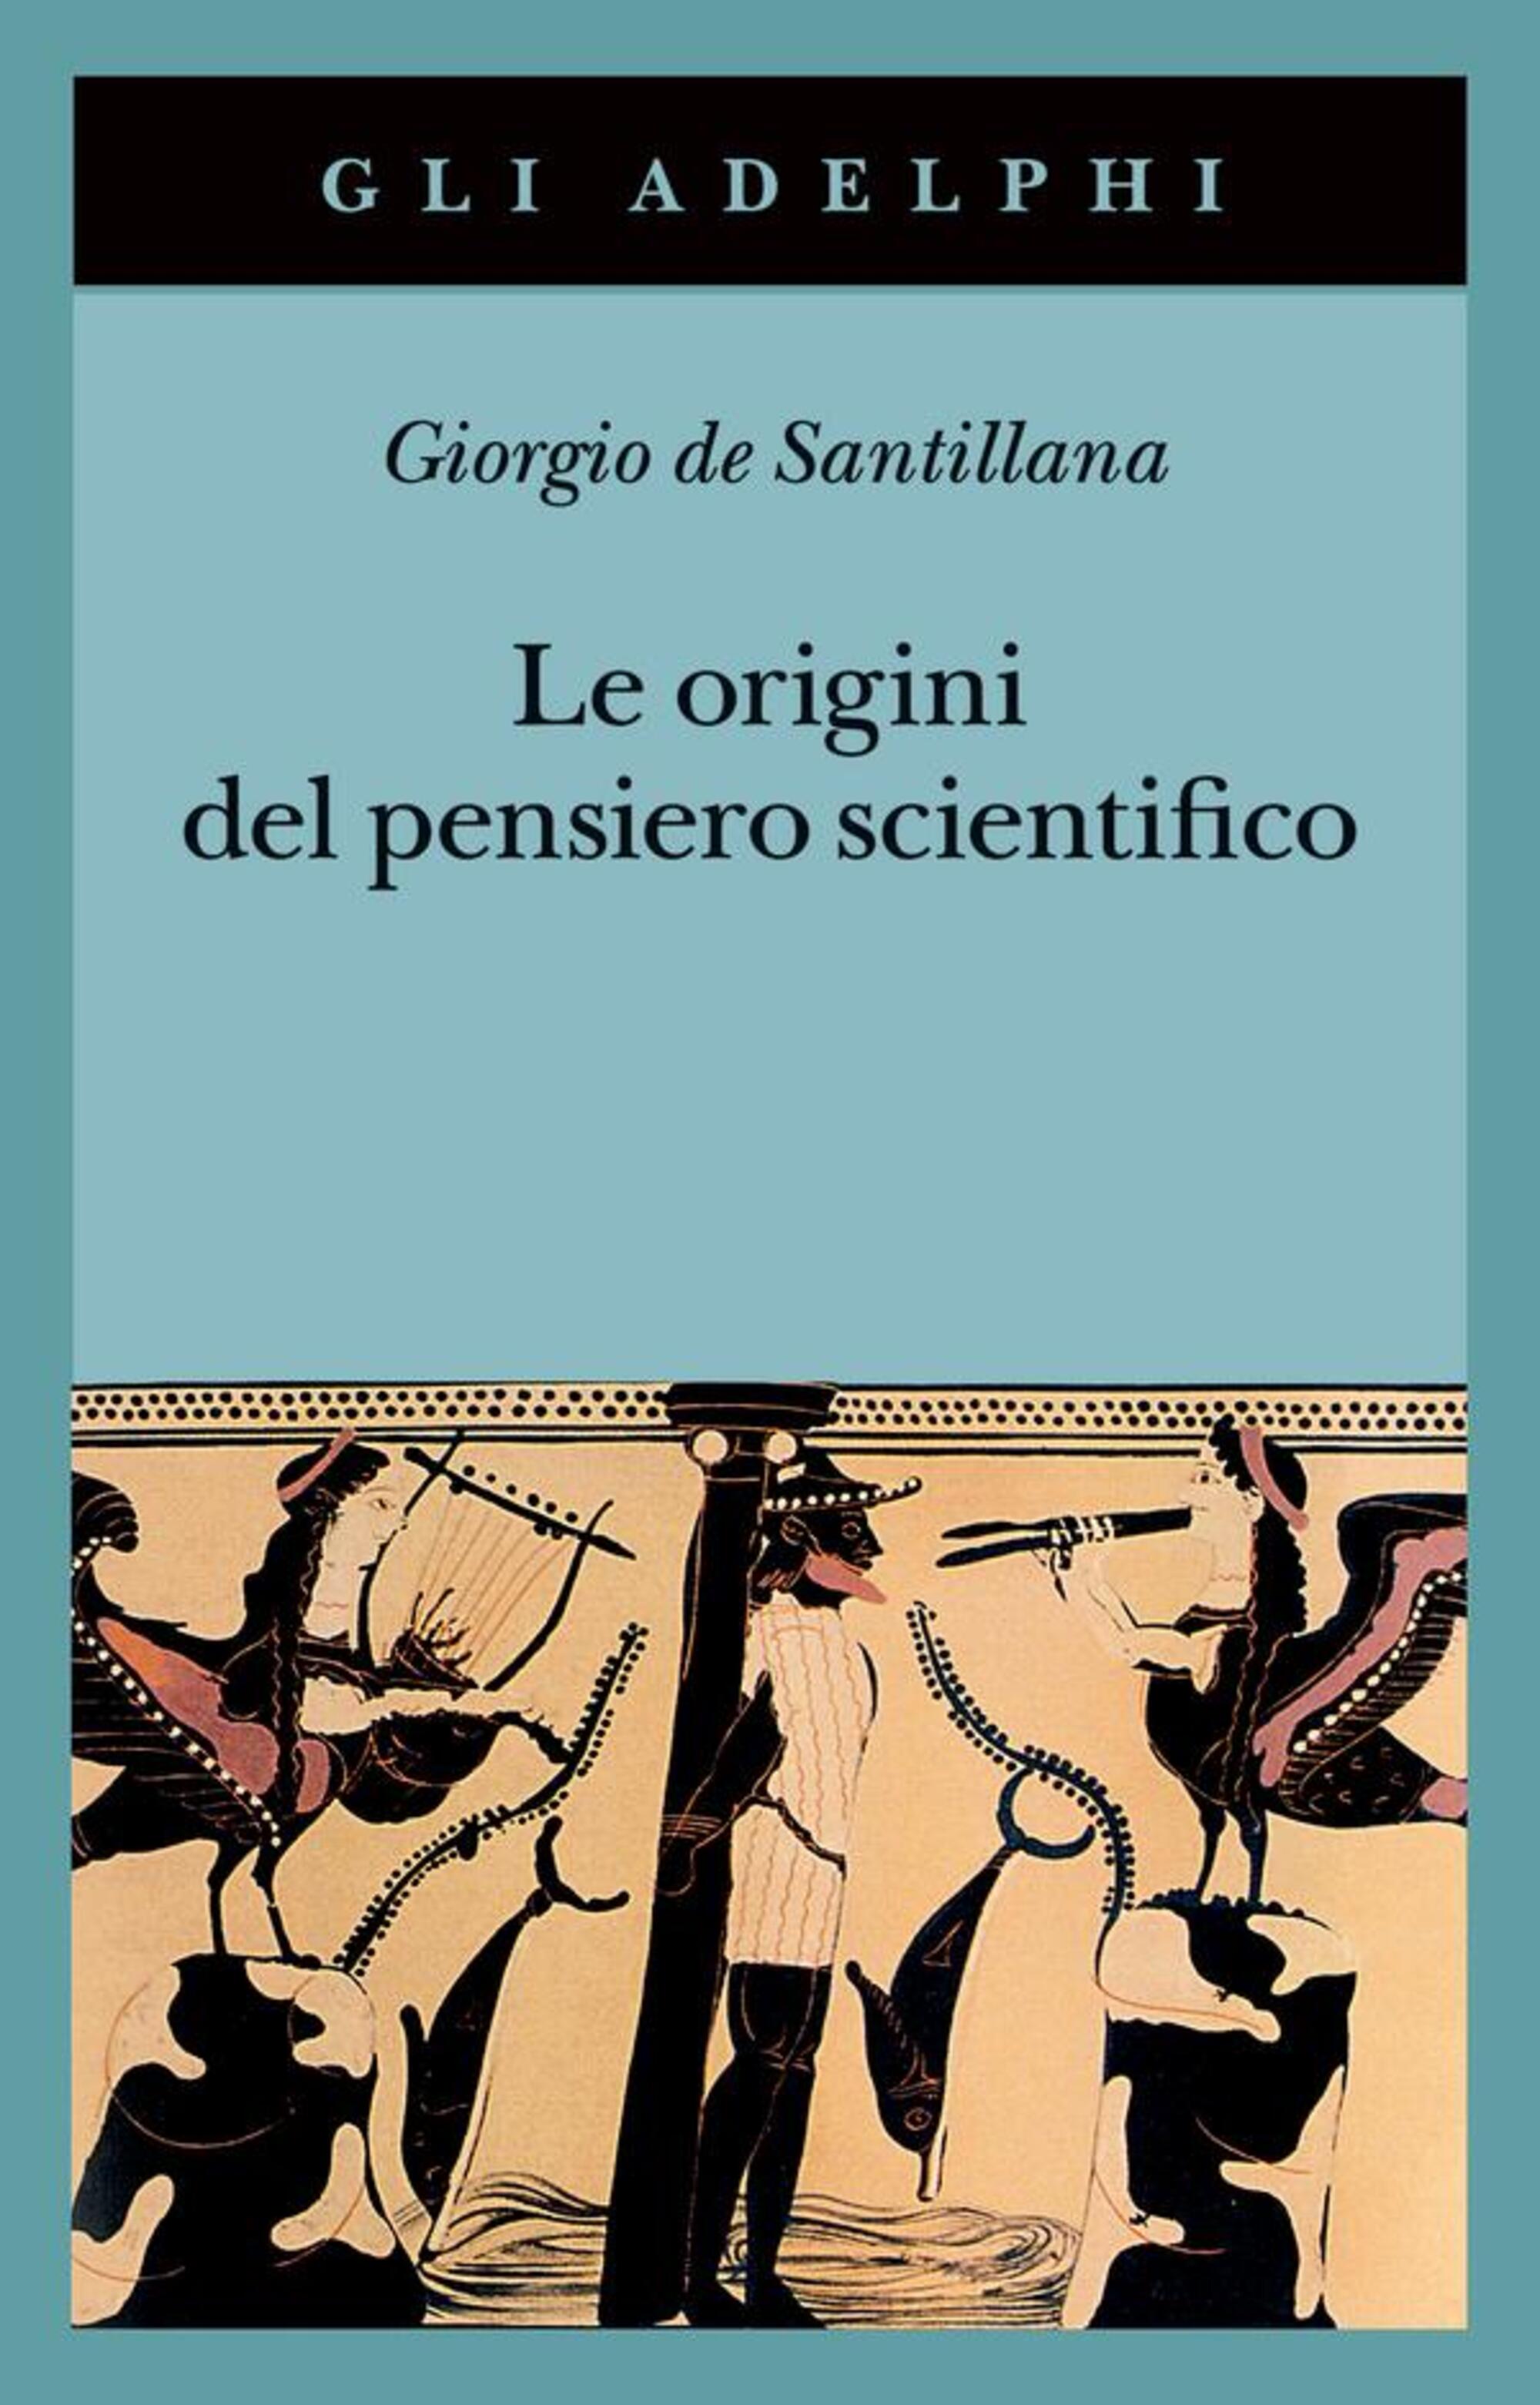 Le origini del pensiero scientifico di Giorgio de Santillana (Adelphi 2023)